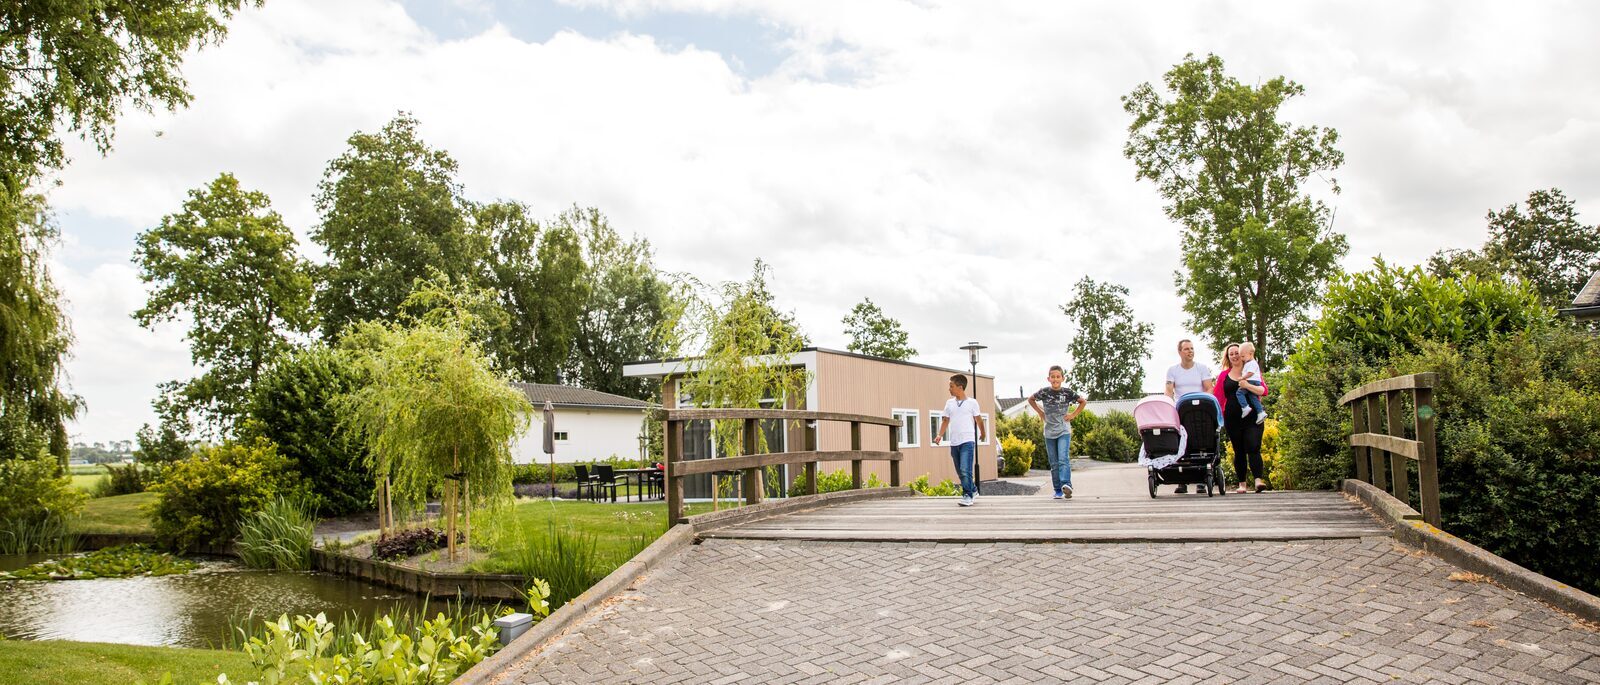 Westerkogge Park in Berkhout